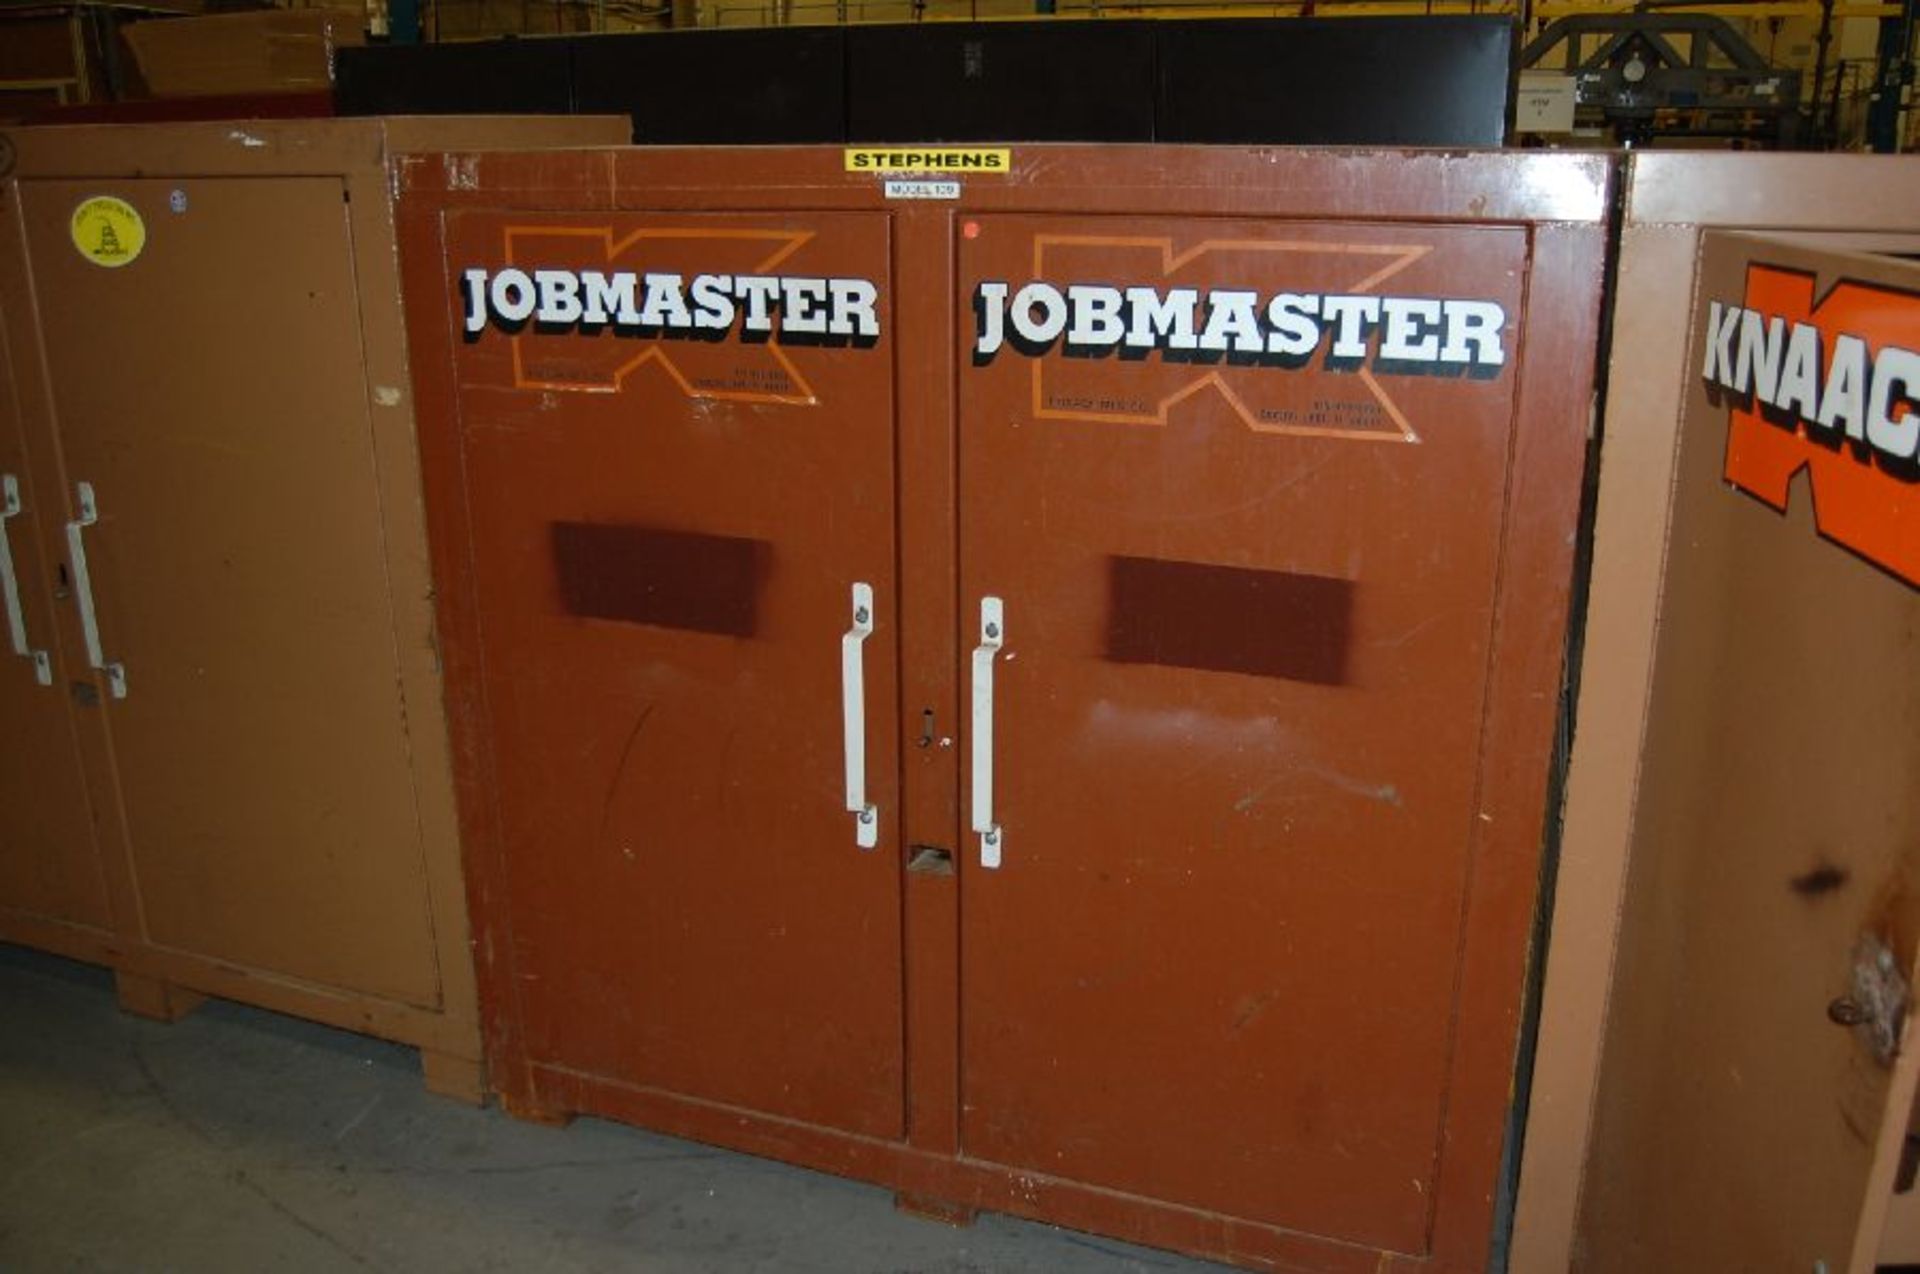 Knaack Model Jobmaster 109 2-Door Storage Cabinet - Image 2 of 5